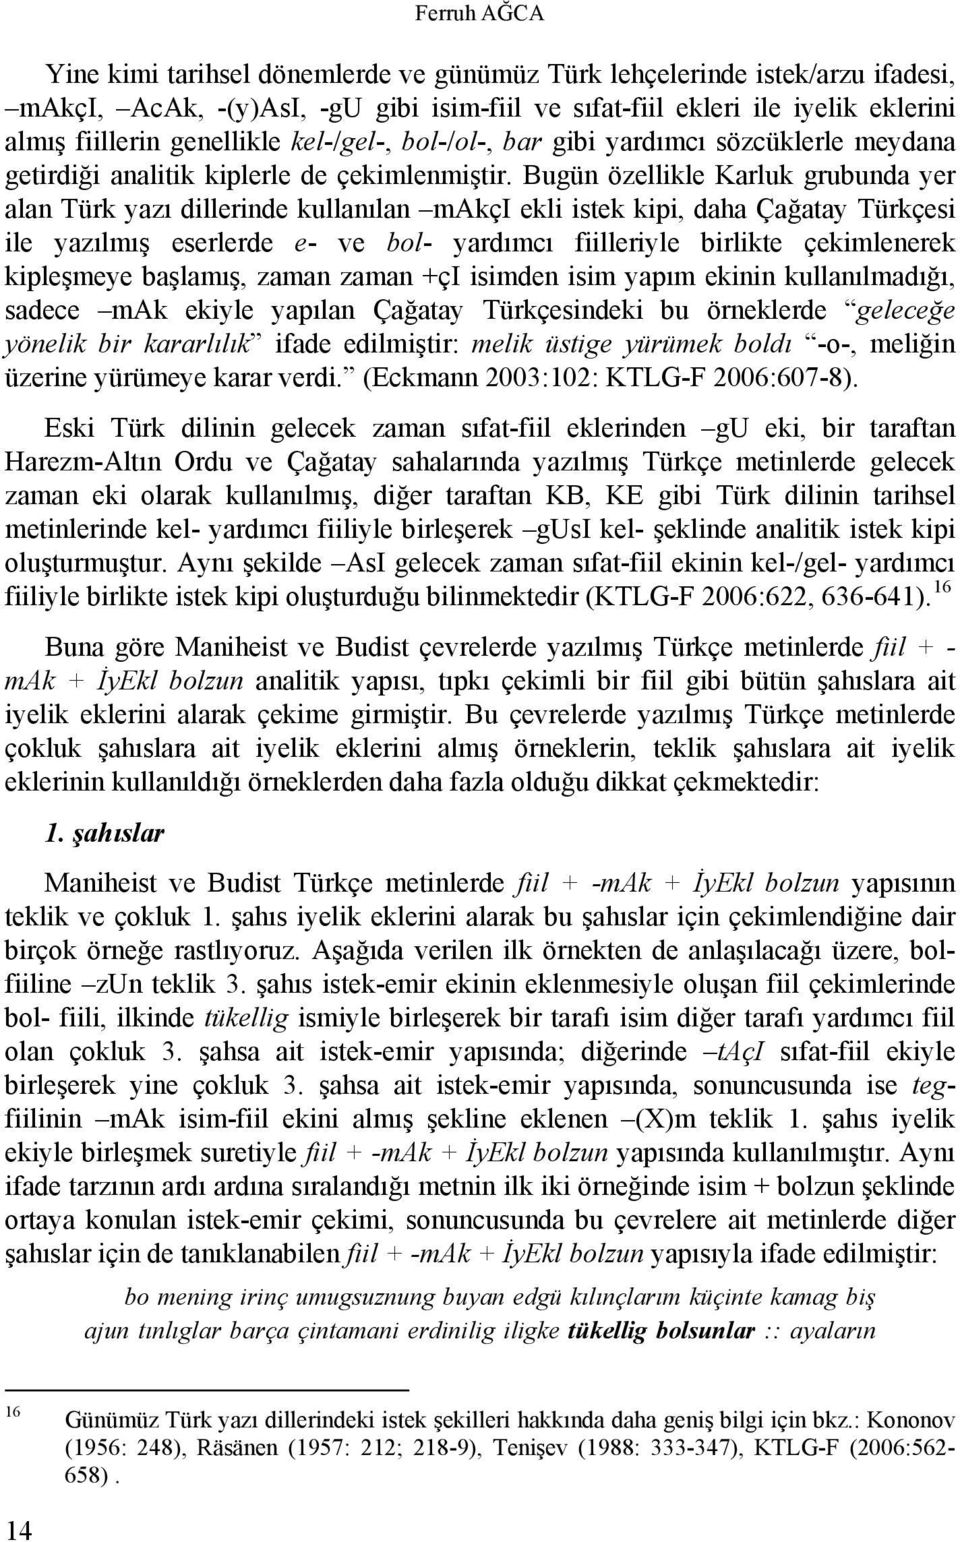 Bugün özellikle Karluk grubunda yer alan Türk yazı dillerinde kullanılan makçi ekli istek kipi, daha Çağatay Türkçesi ile yazılmış eserlerde e- ve bol- yardımcı fiilleriyle birlikte çekimlenerek